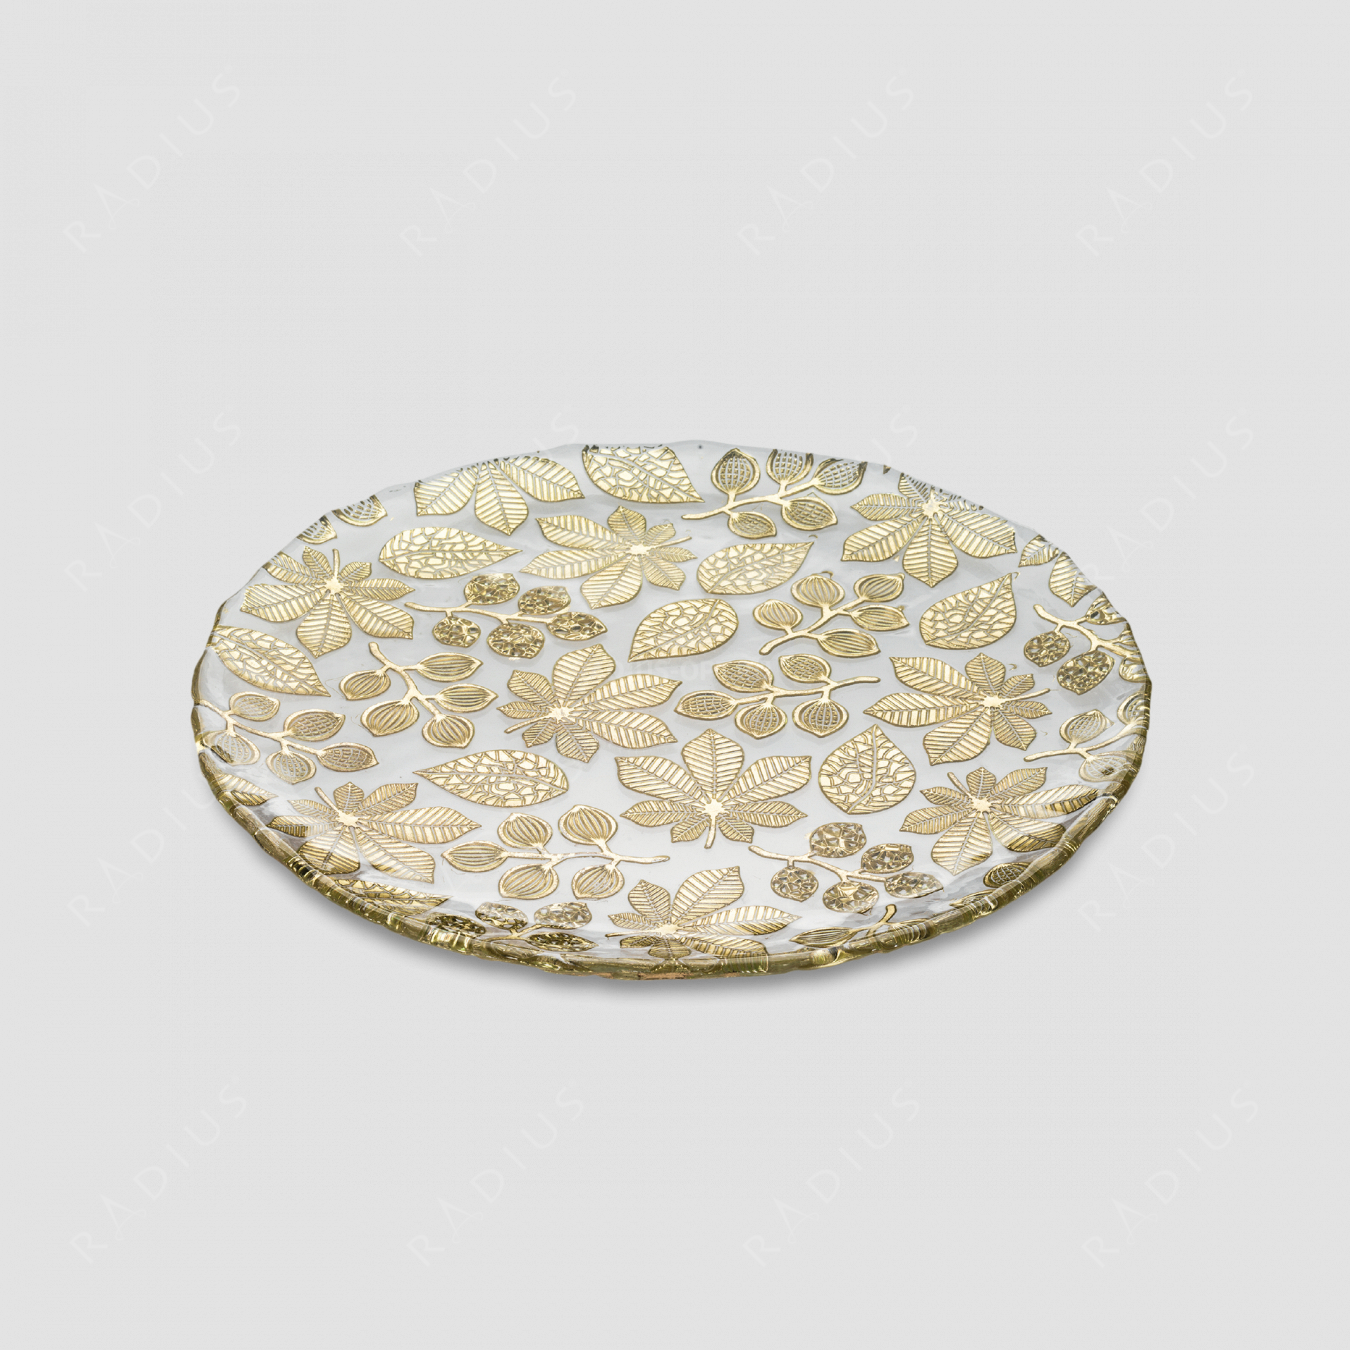 Блюдо круглое плоское, диаметр: 37 см, высота: 2 см, материал: стекло, цвет: золото, серия Naturalia, IVV (Italy), Италия